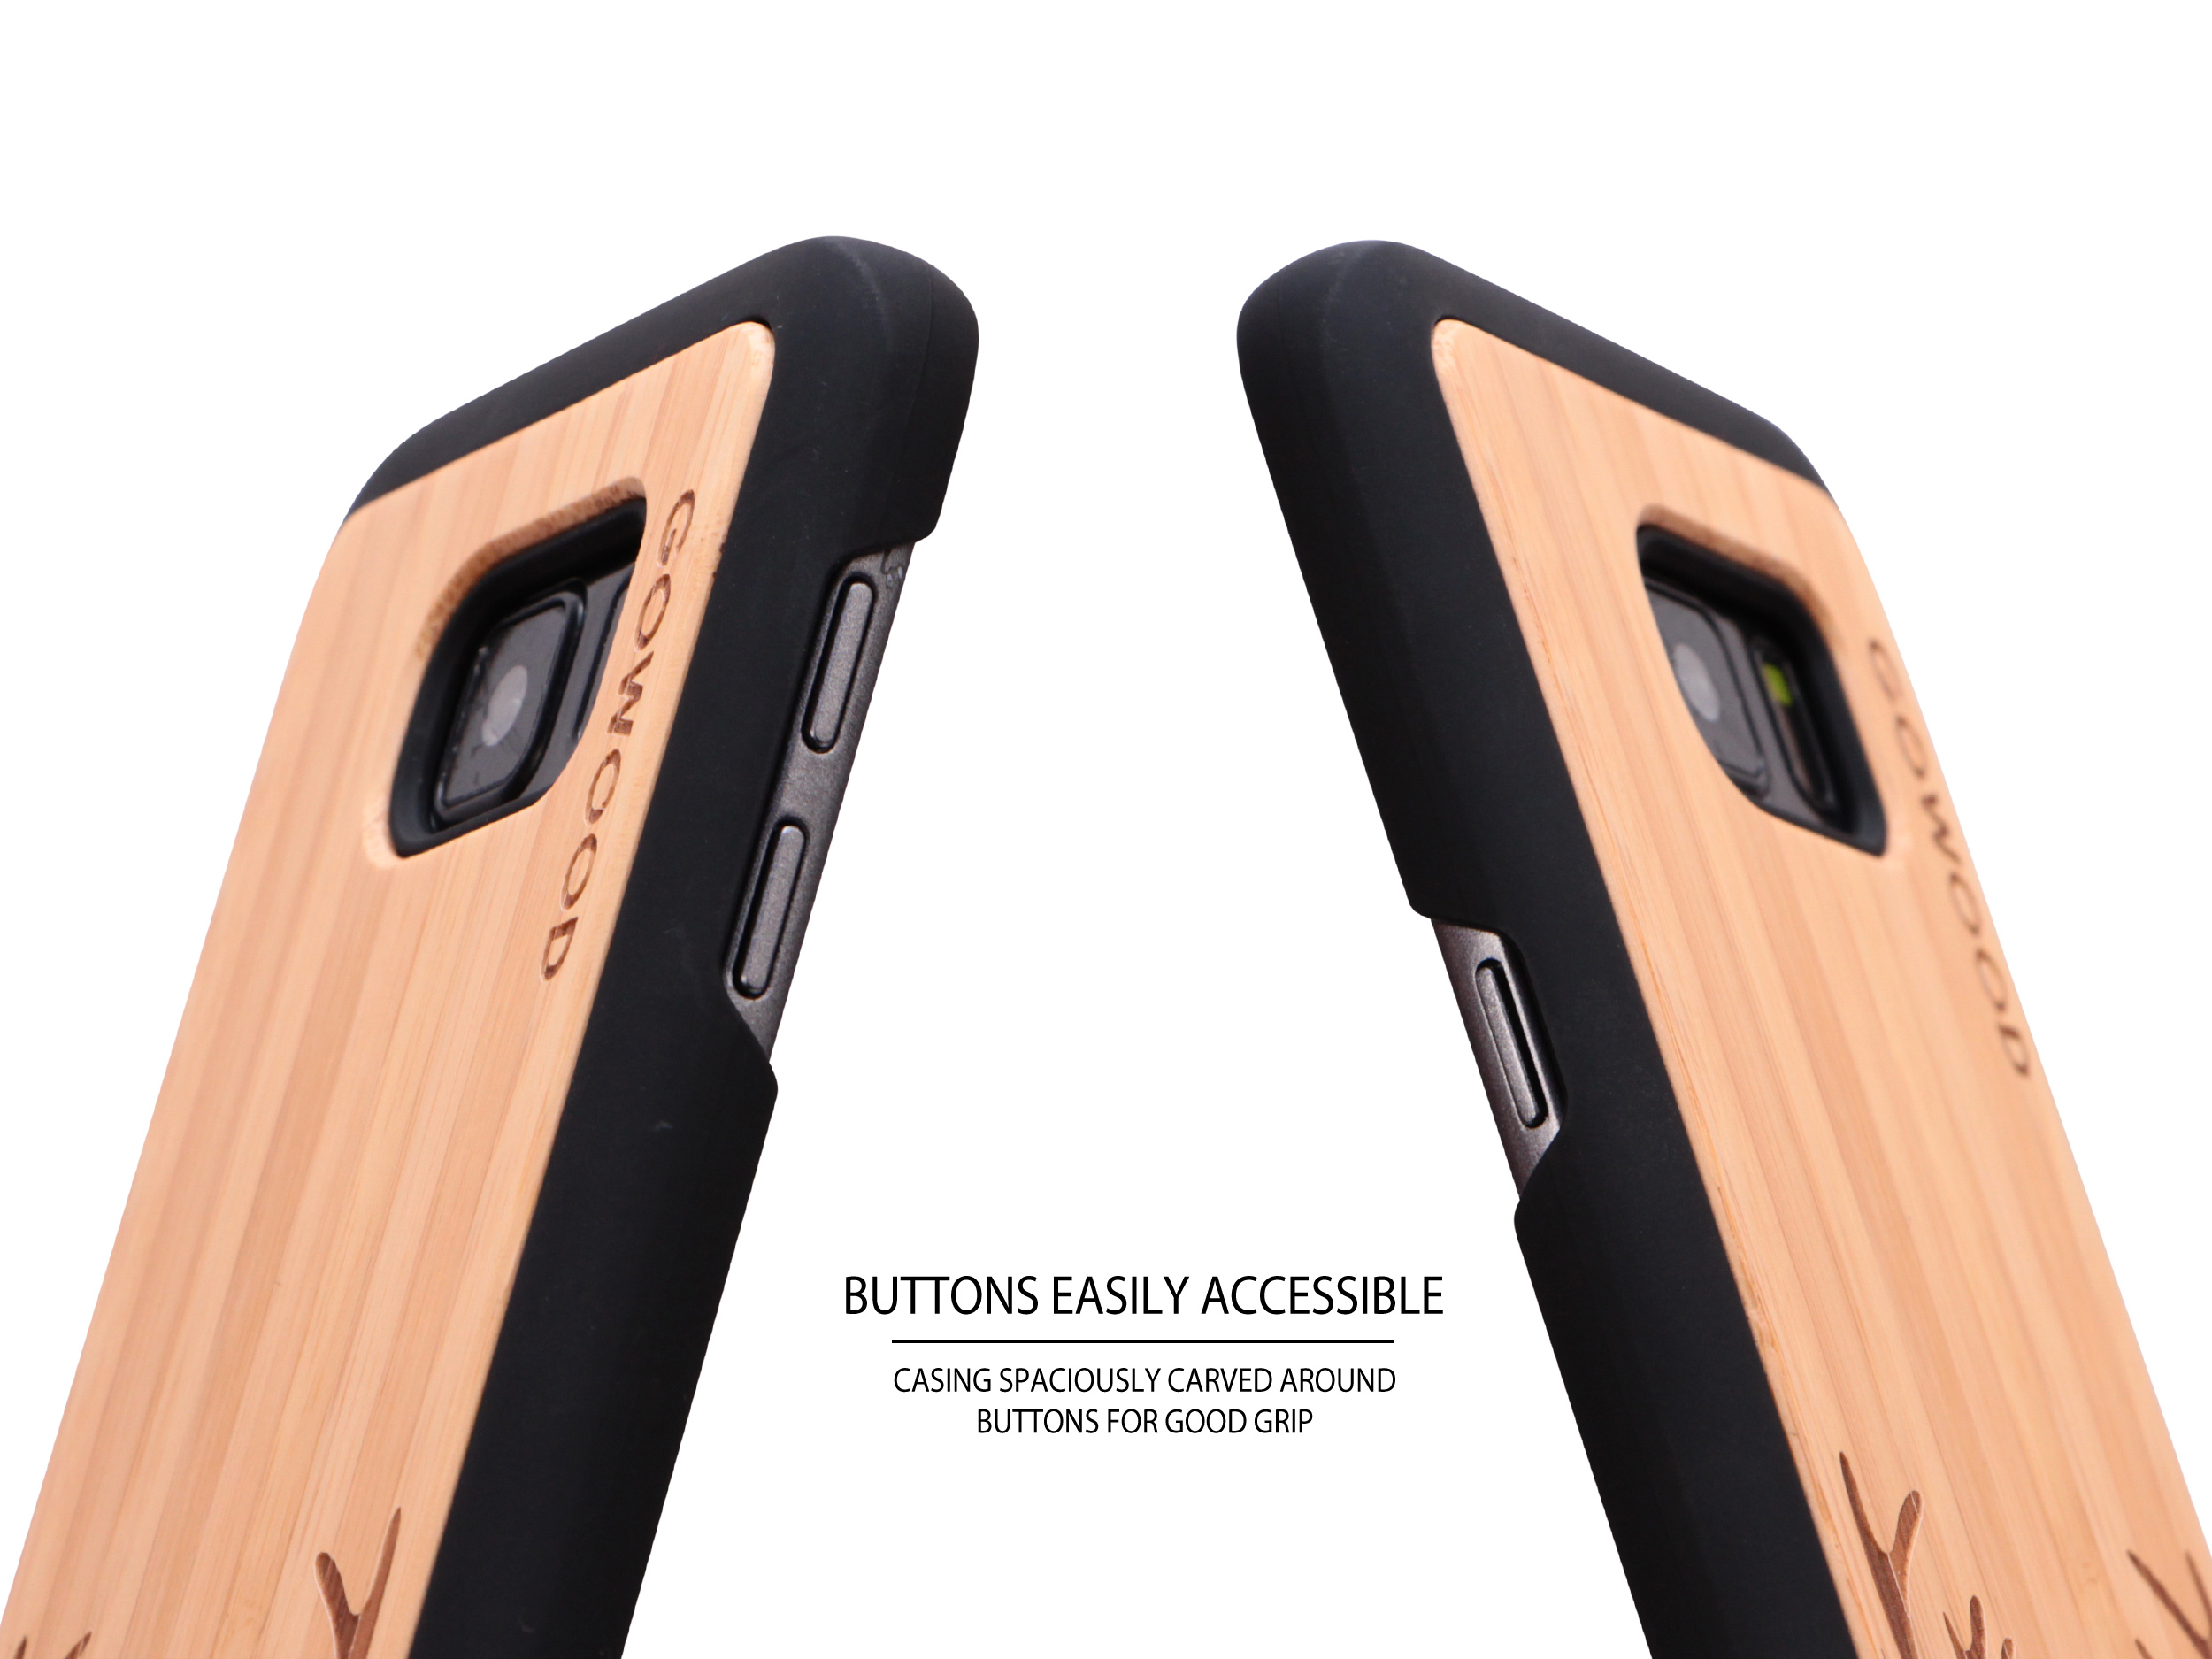 Samsung Galaxy S7 wood case deer buttons